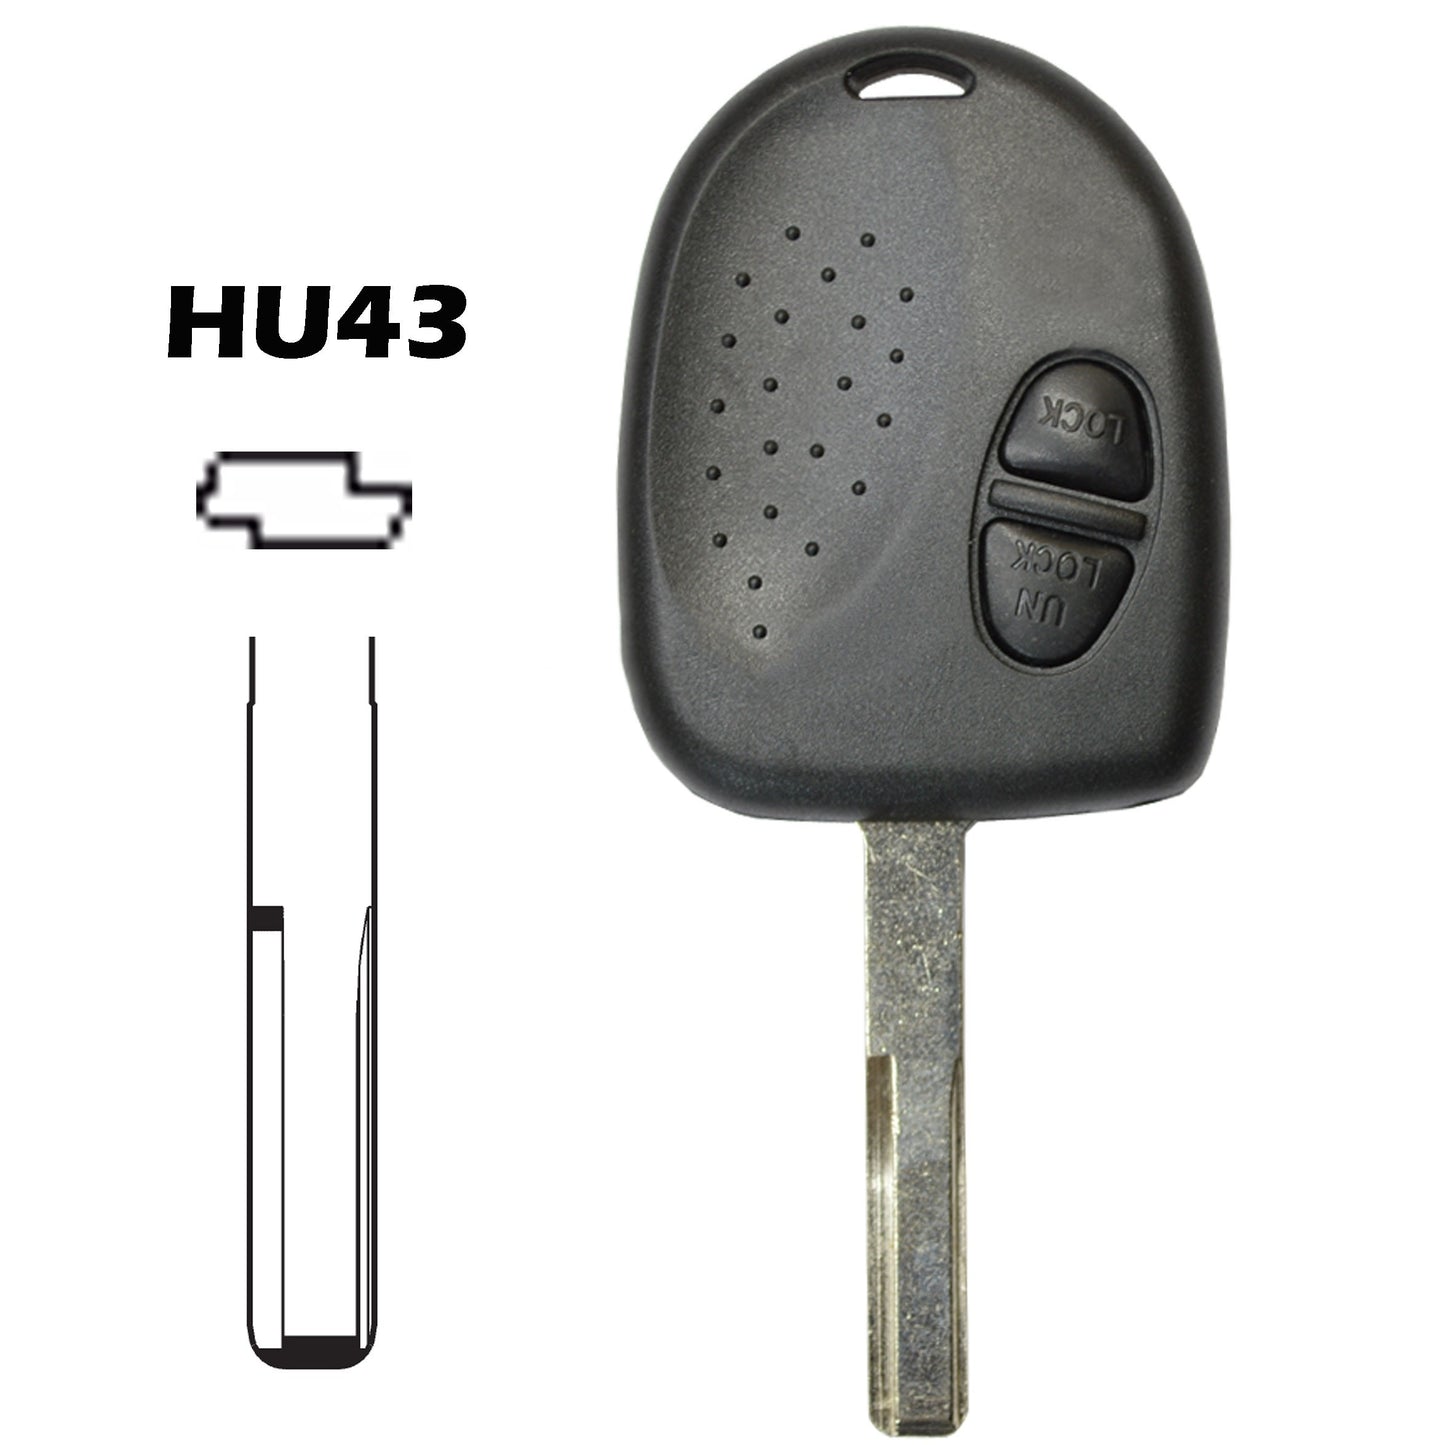 Caixa comando 2 botões chave HU43 Chevrolet Opel